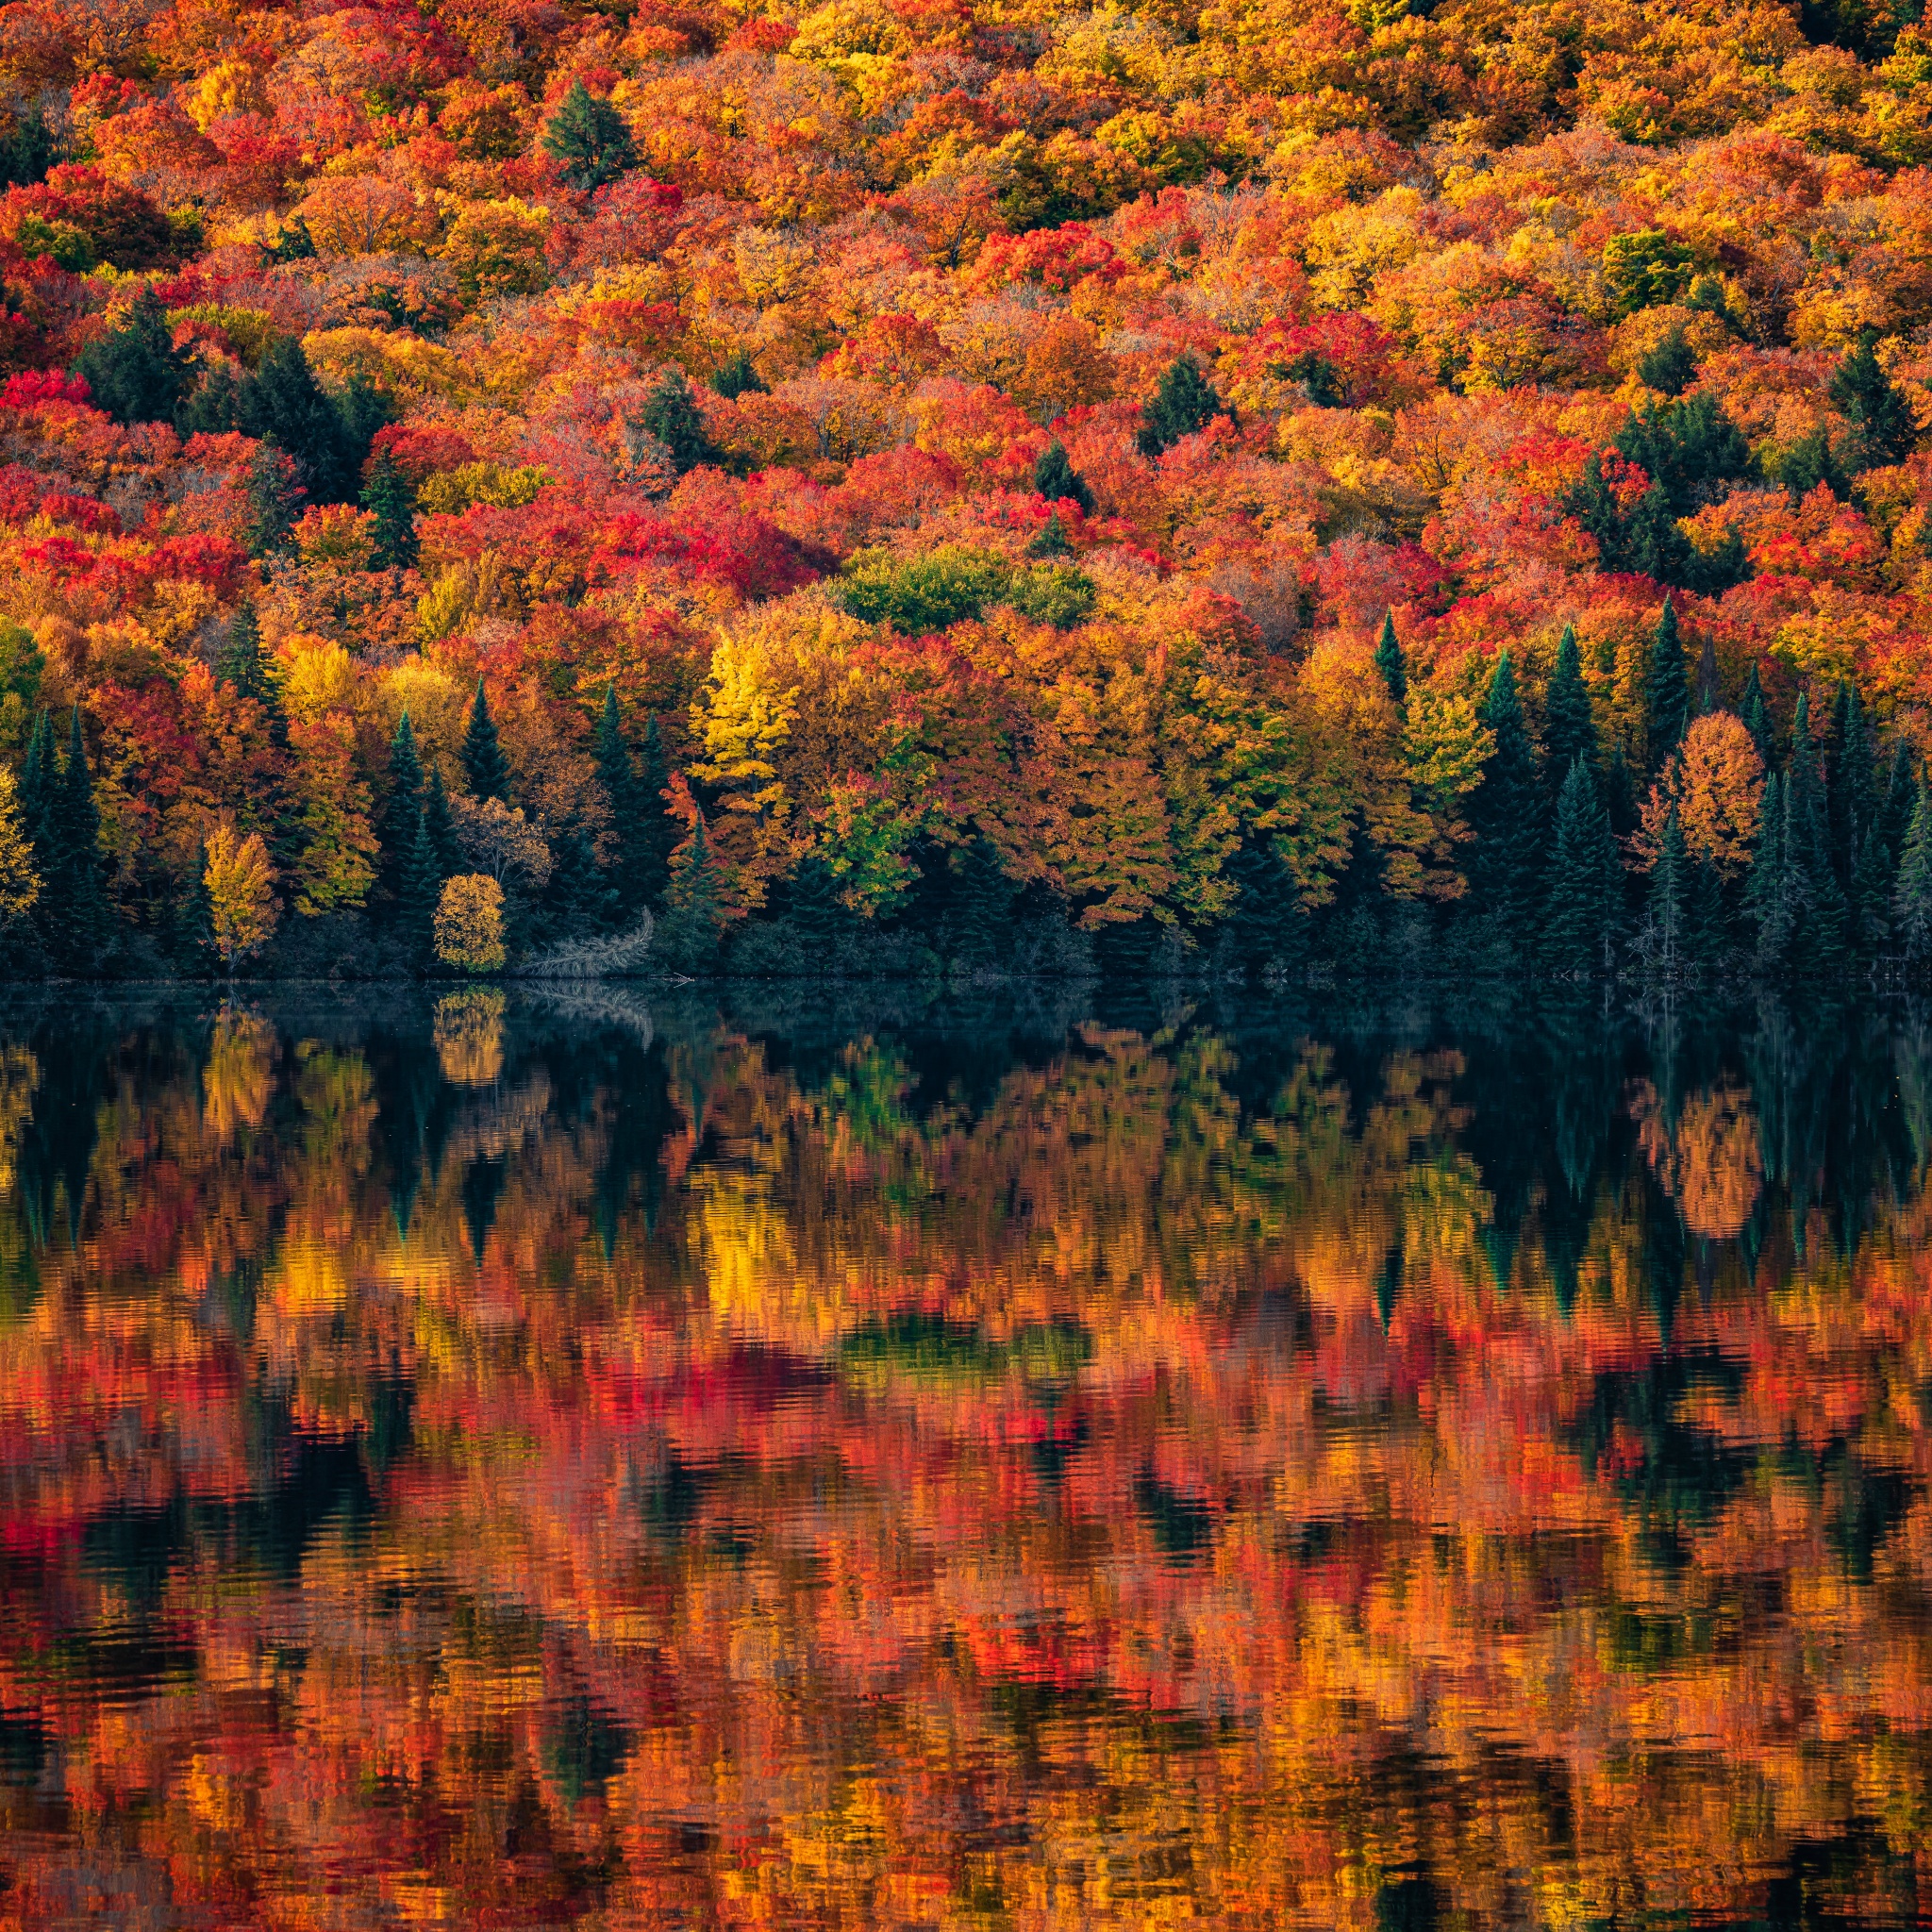 Algonquin Provincial Park Wallpaper 4K, Ontario, Canada, Autumn